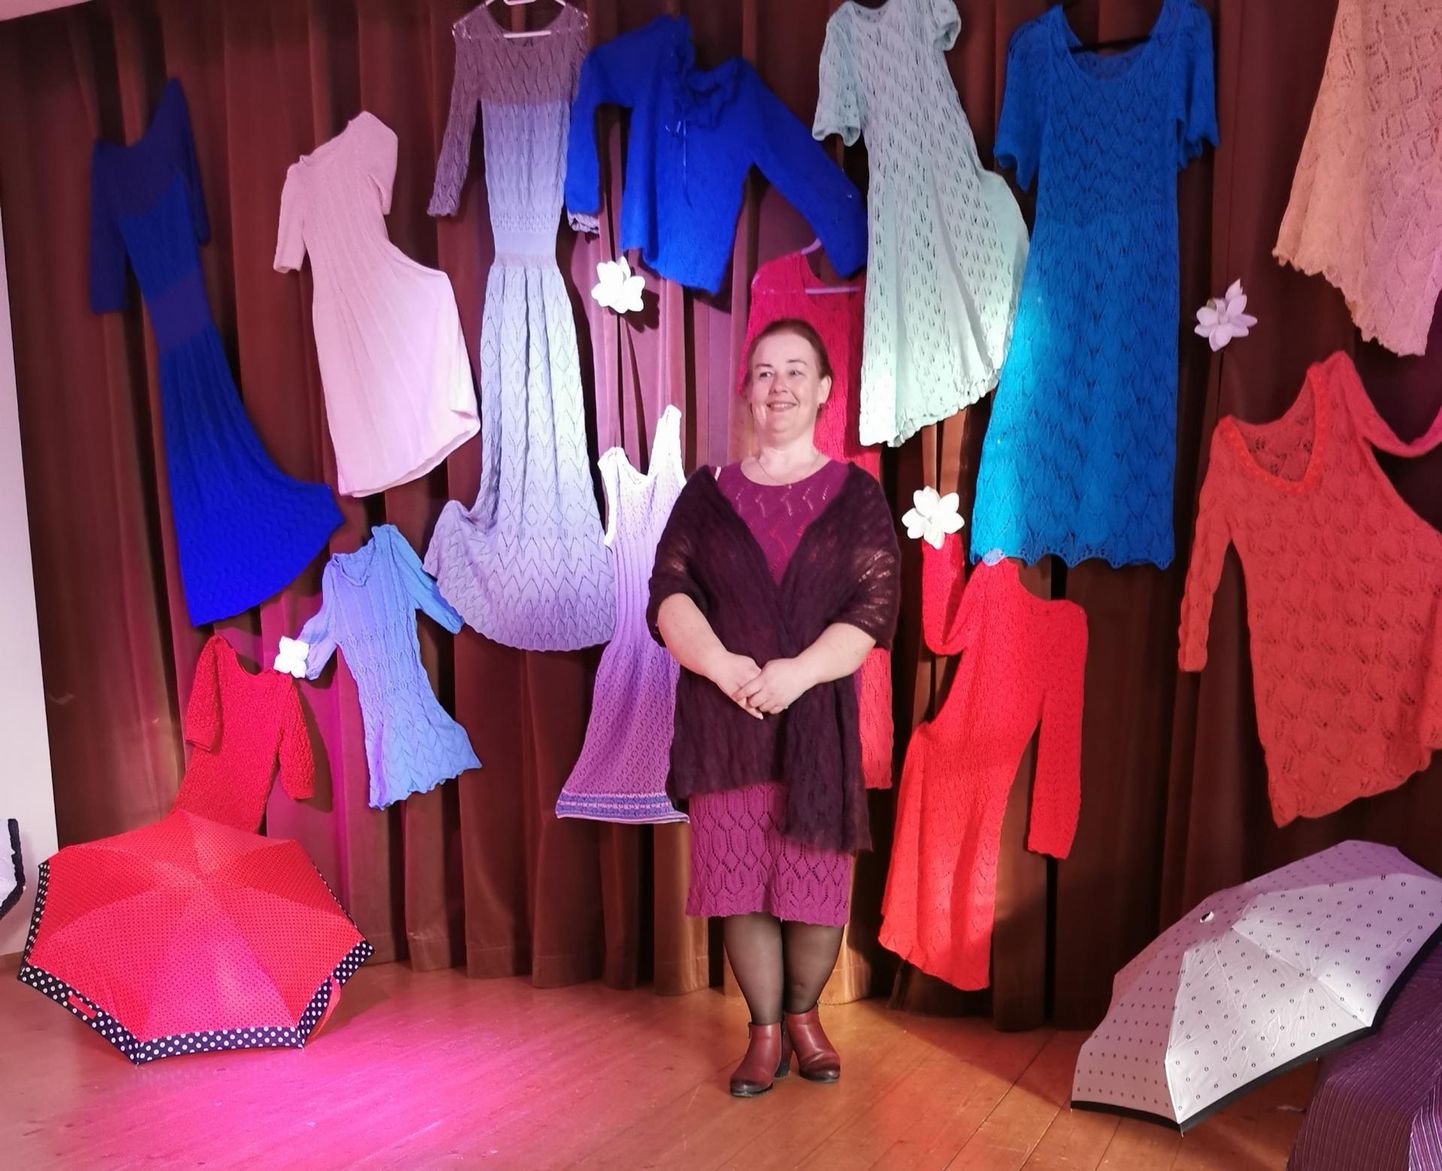 Viimasel hetkel täienes Puka kultuurimajas välja pandud näitus paljude imekaunite kleitide ja kampsunitega, mille tegija on Anne Riis.